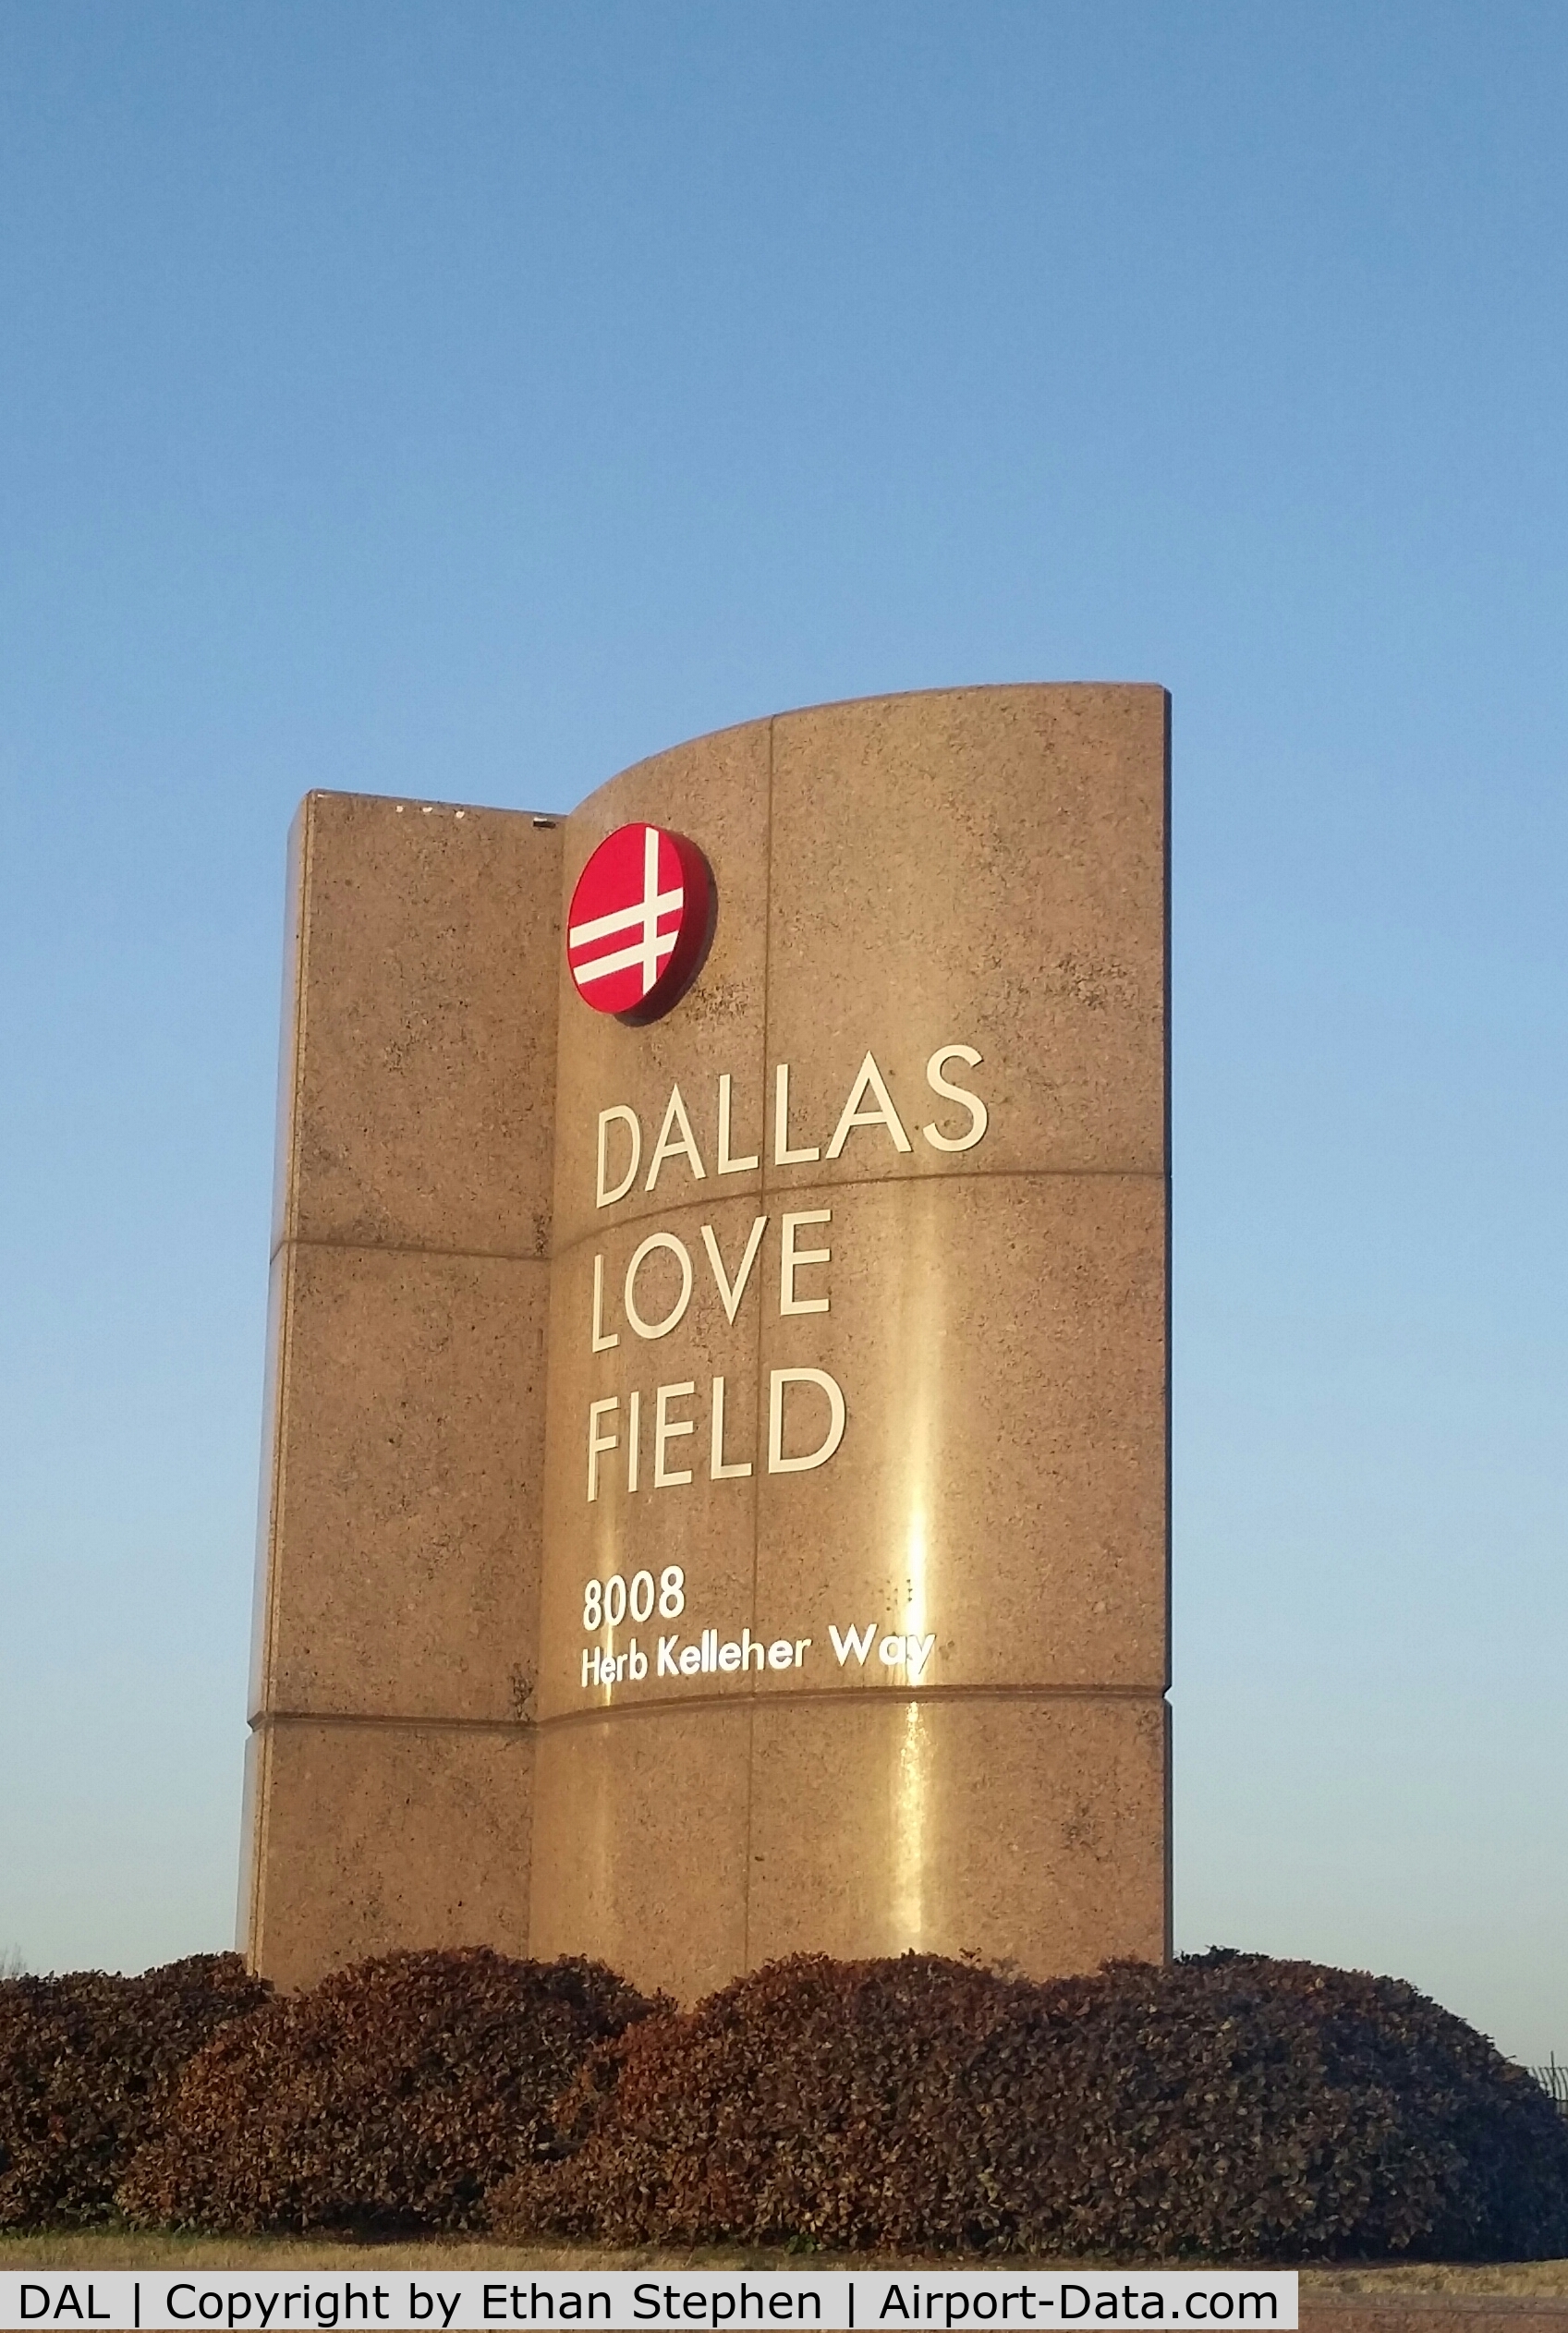 Dallas Love Field Airport (DAL) - New sign